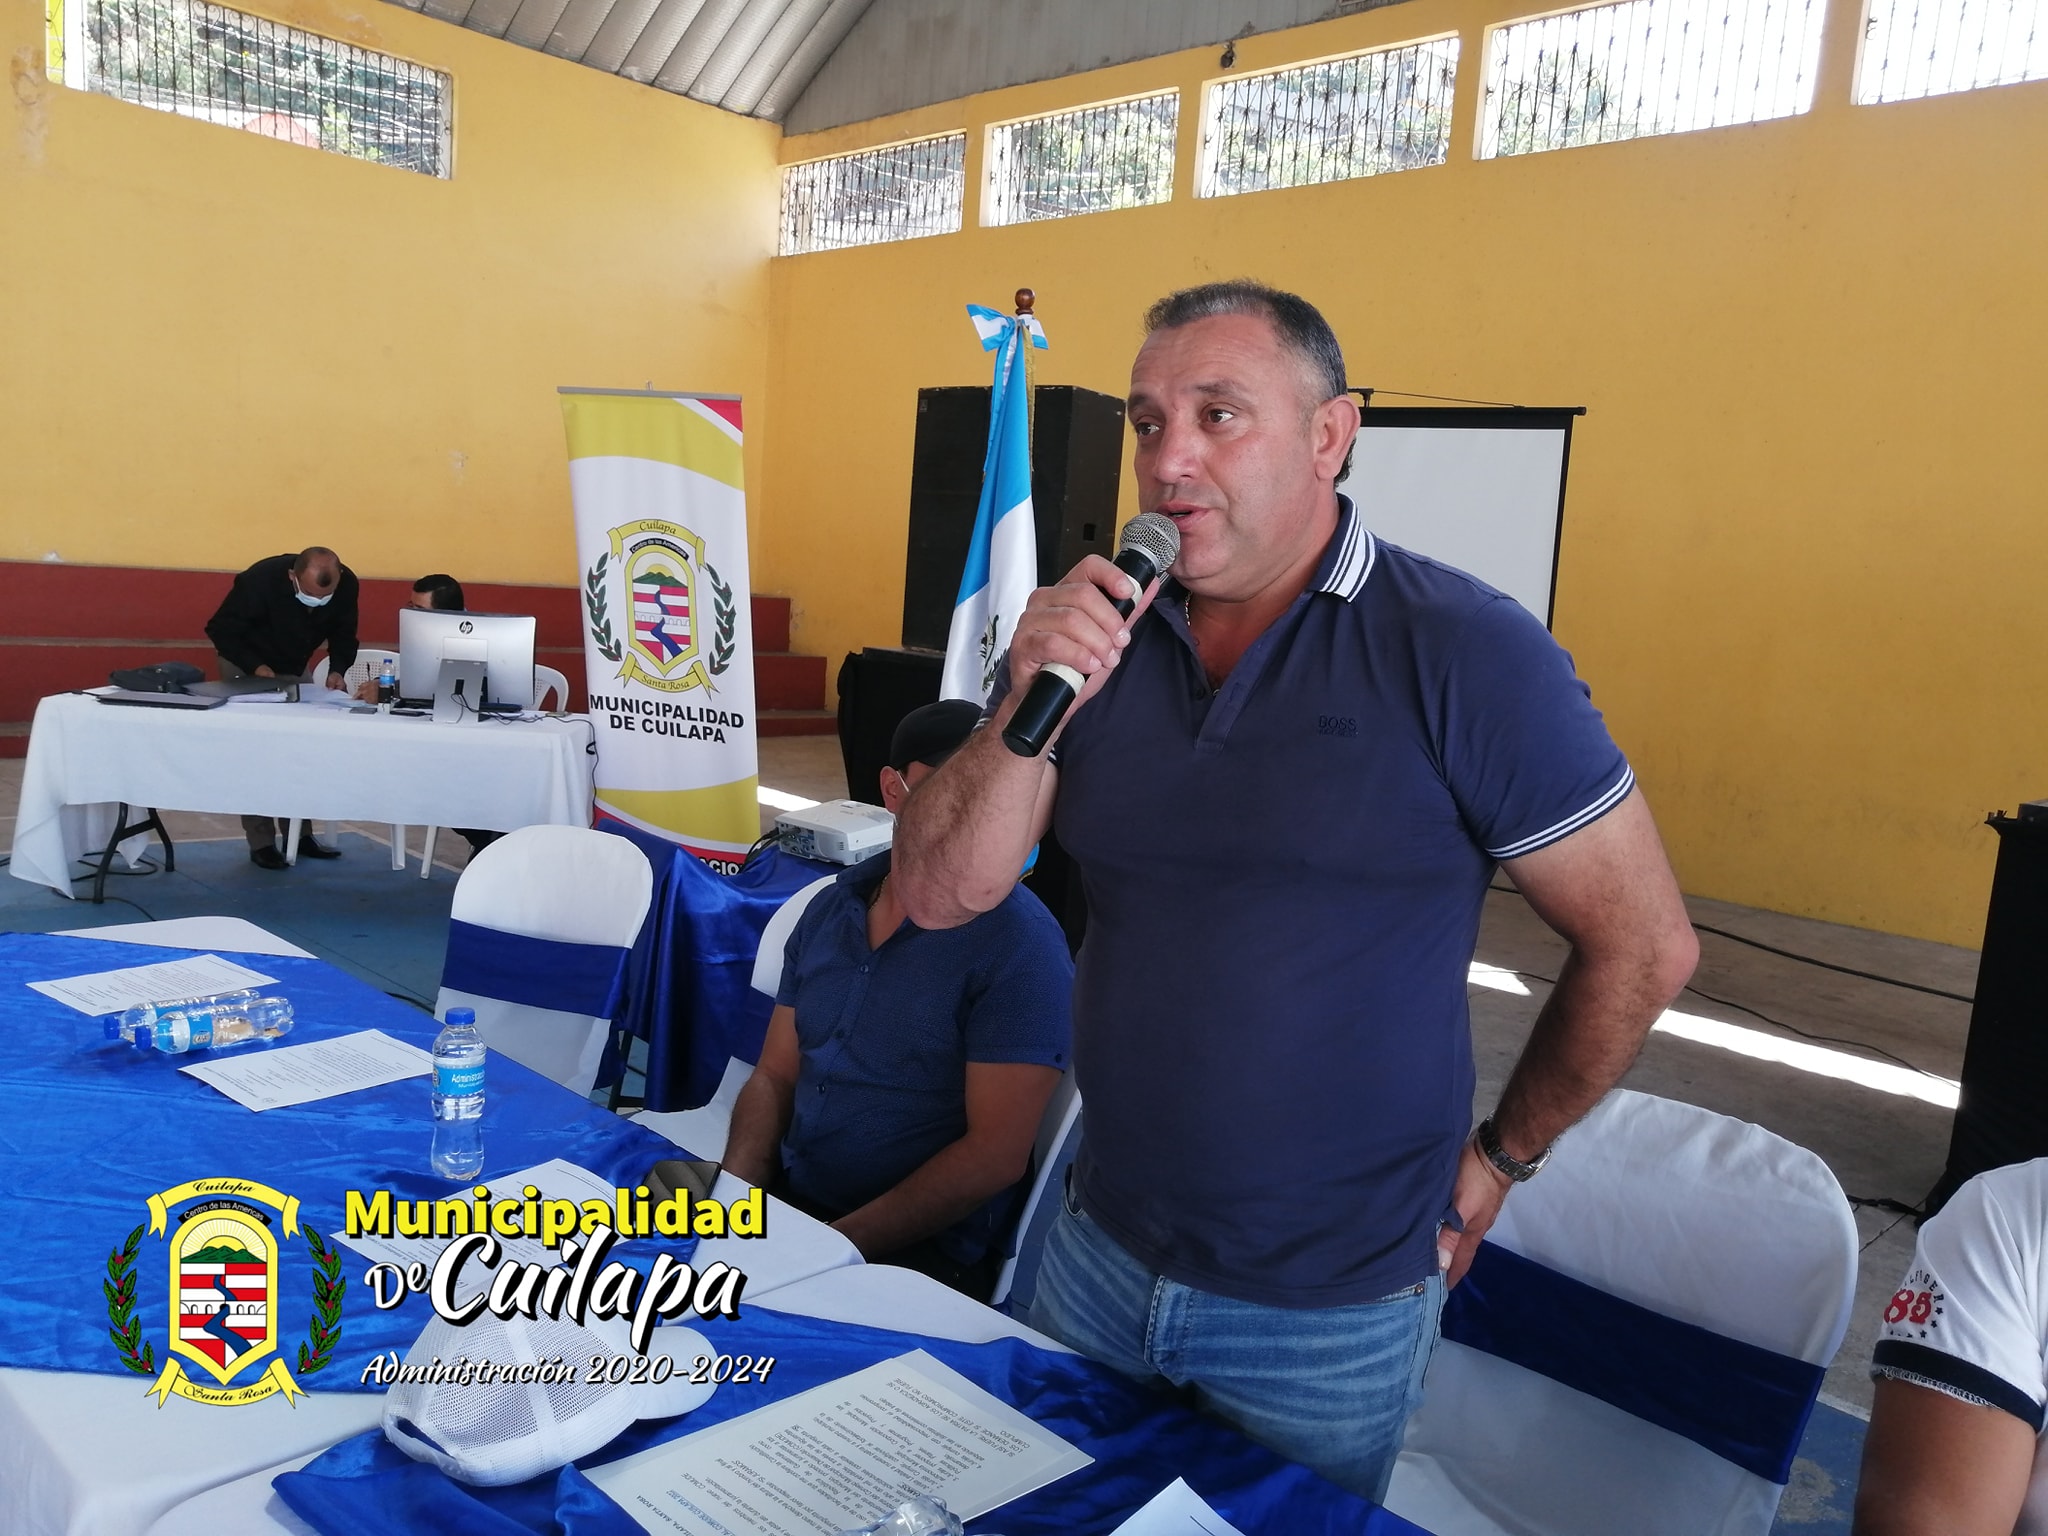 Sala retira inmunidad al alcalde de Cuilapa, Santa Rosa